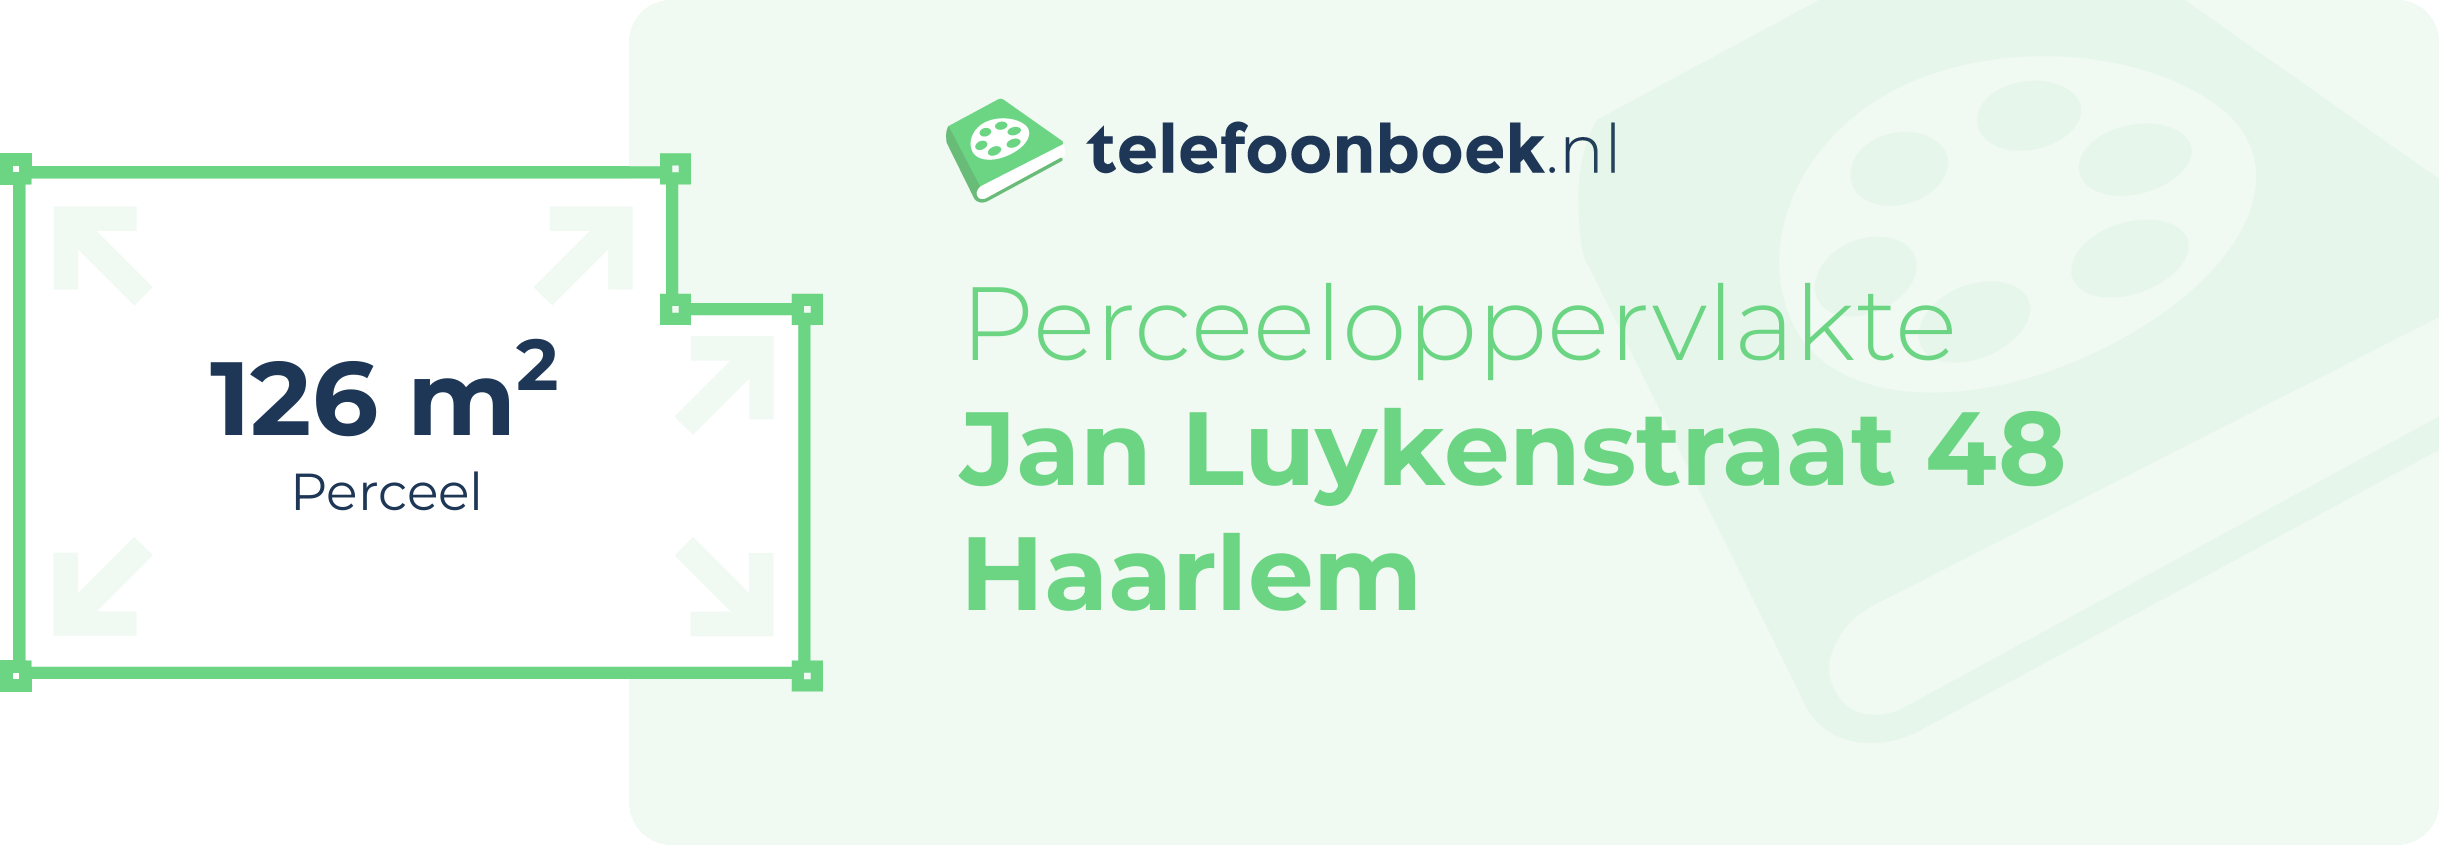 Perceeloppervlakte Jan Luykenstraat 48 Haarlem